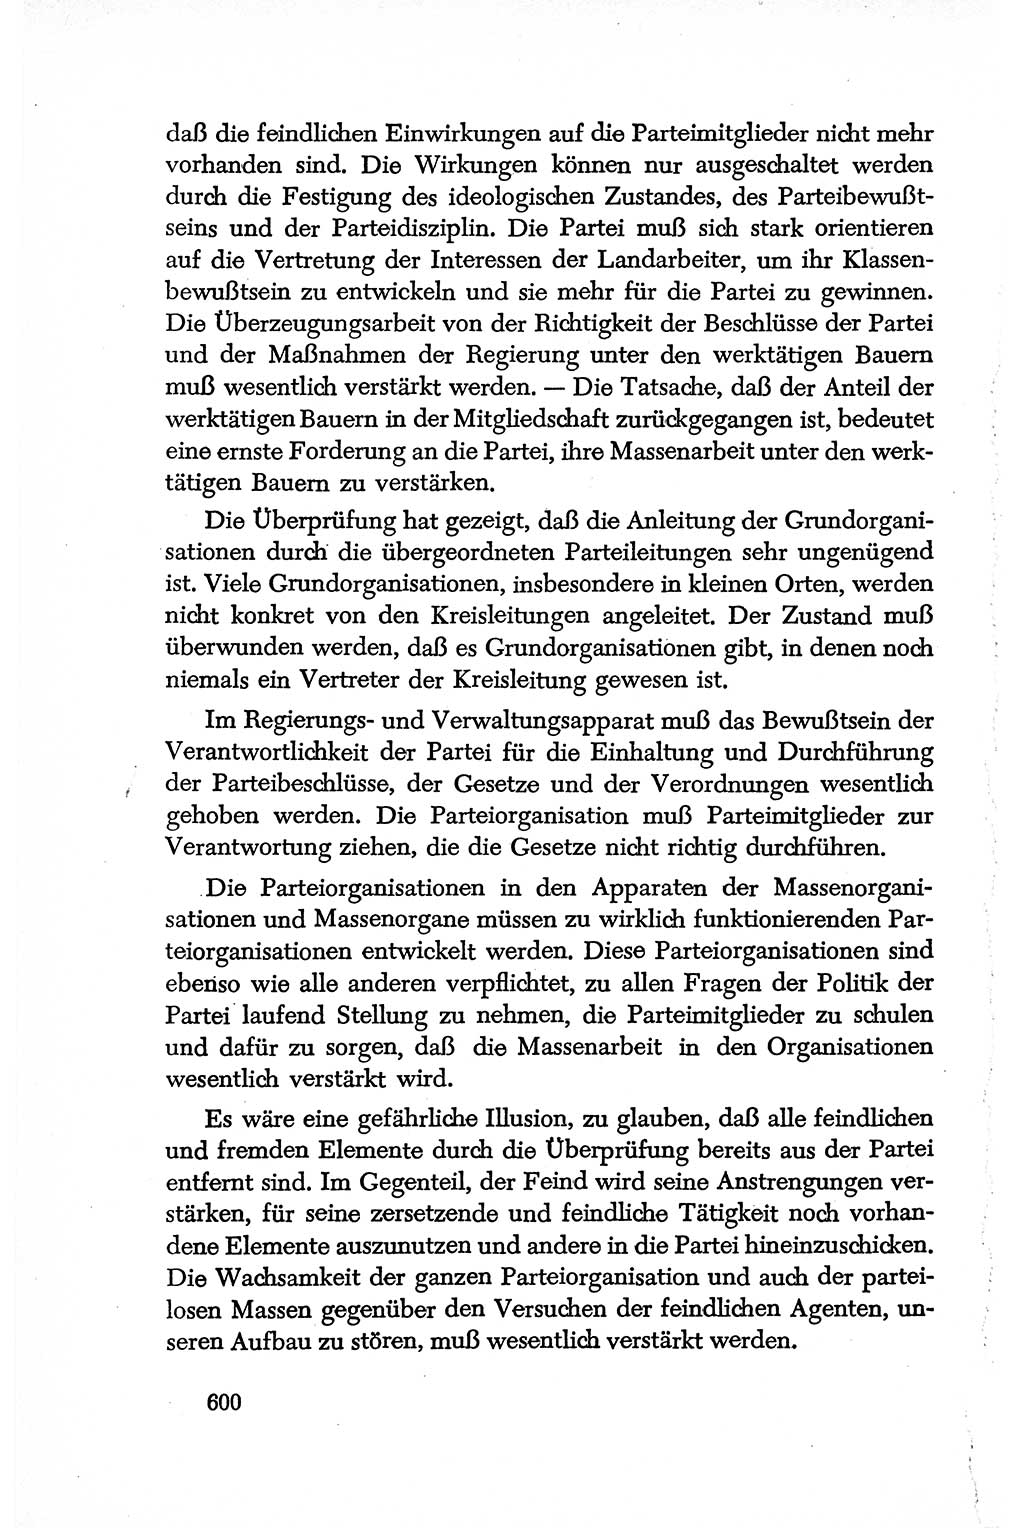 Dokumente der Sozialistischen Einheitspartei Deutschlands (SED) [Deutsche Demokratische Republik (DDR)] 1950-1952, Seite 600 (Dok. SED DDR 1950-1952, S. 600)